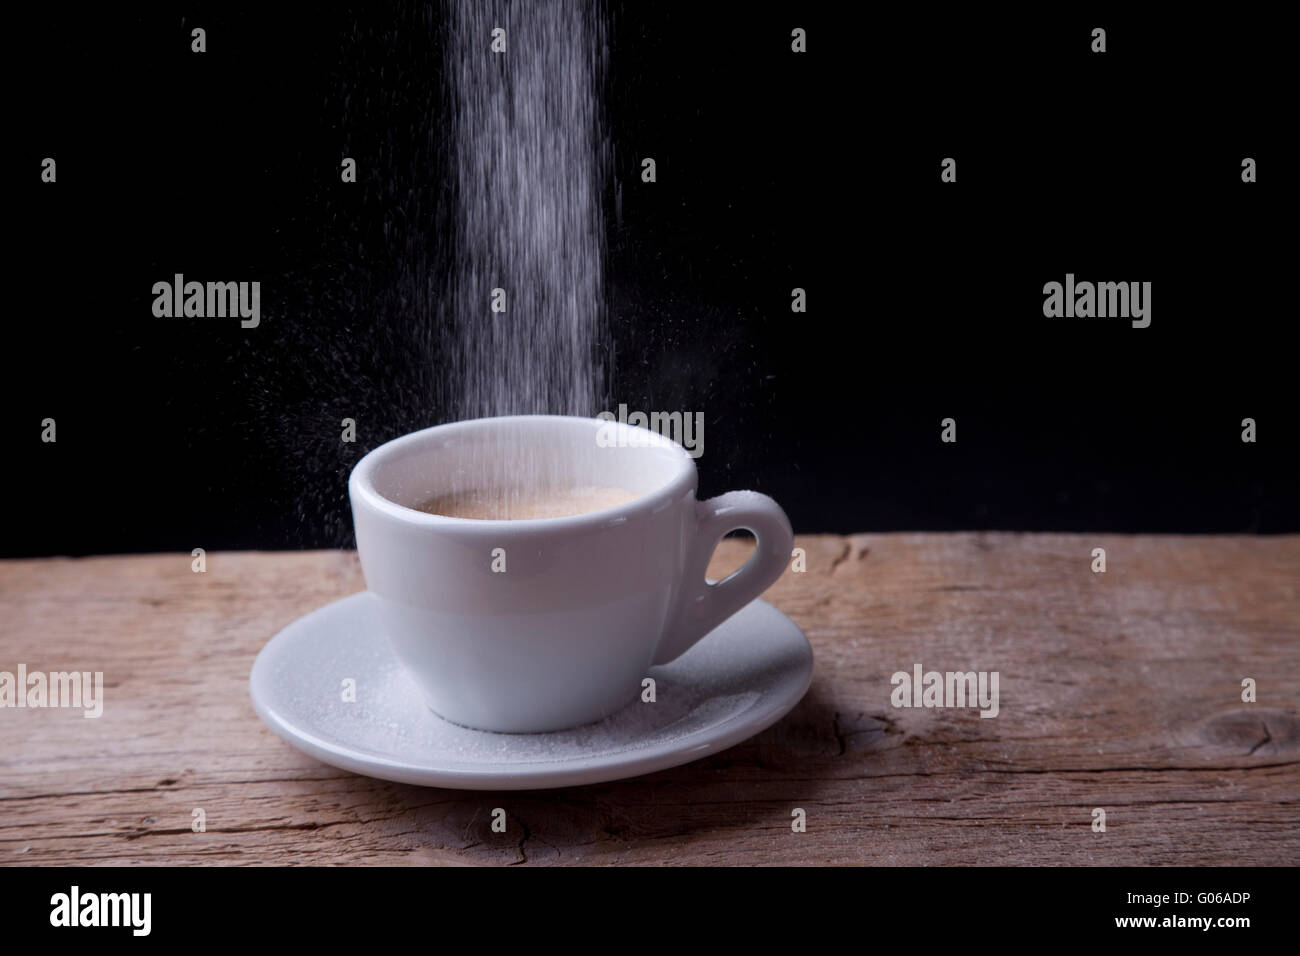 Le café avec du sucre qui se déverse sur la table en bois Banque D'Images